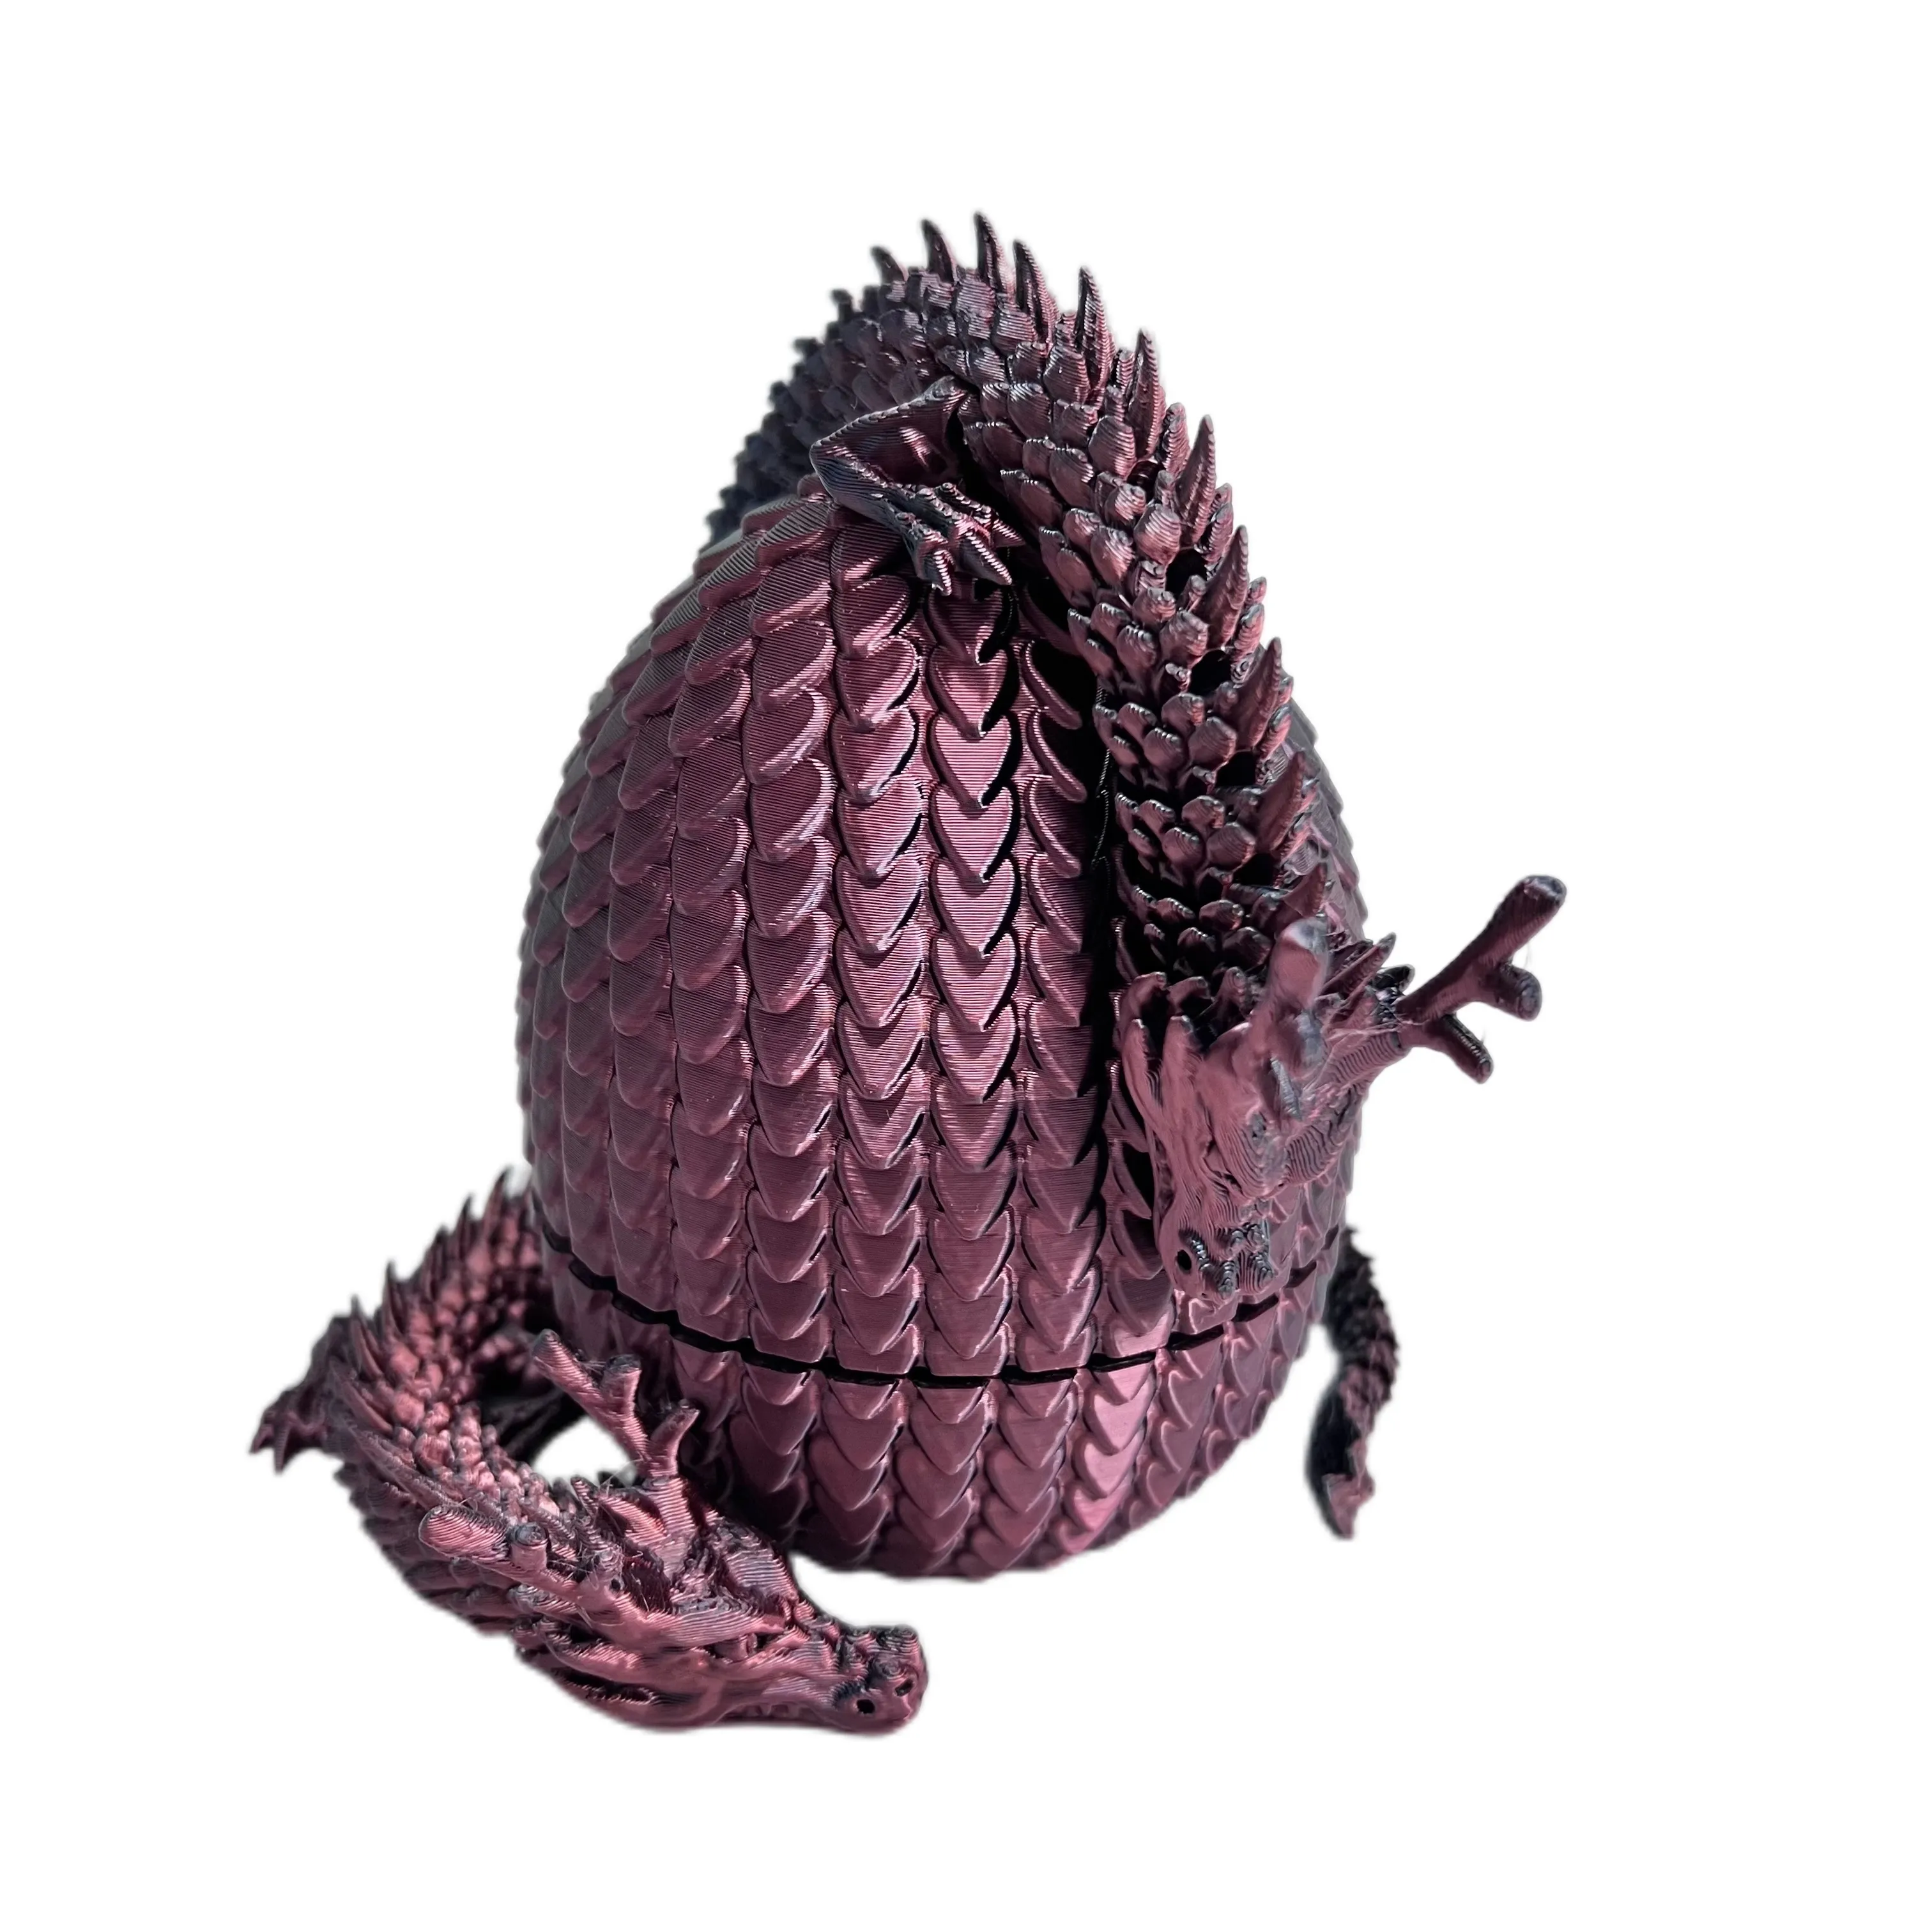 Быстрый образец китайского дракона, услуги по обработке 3D-печати, 3D печать, 3D печать, китайский дракон и дракон, яйцо